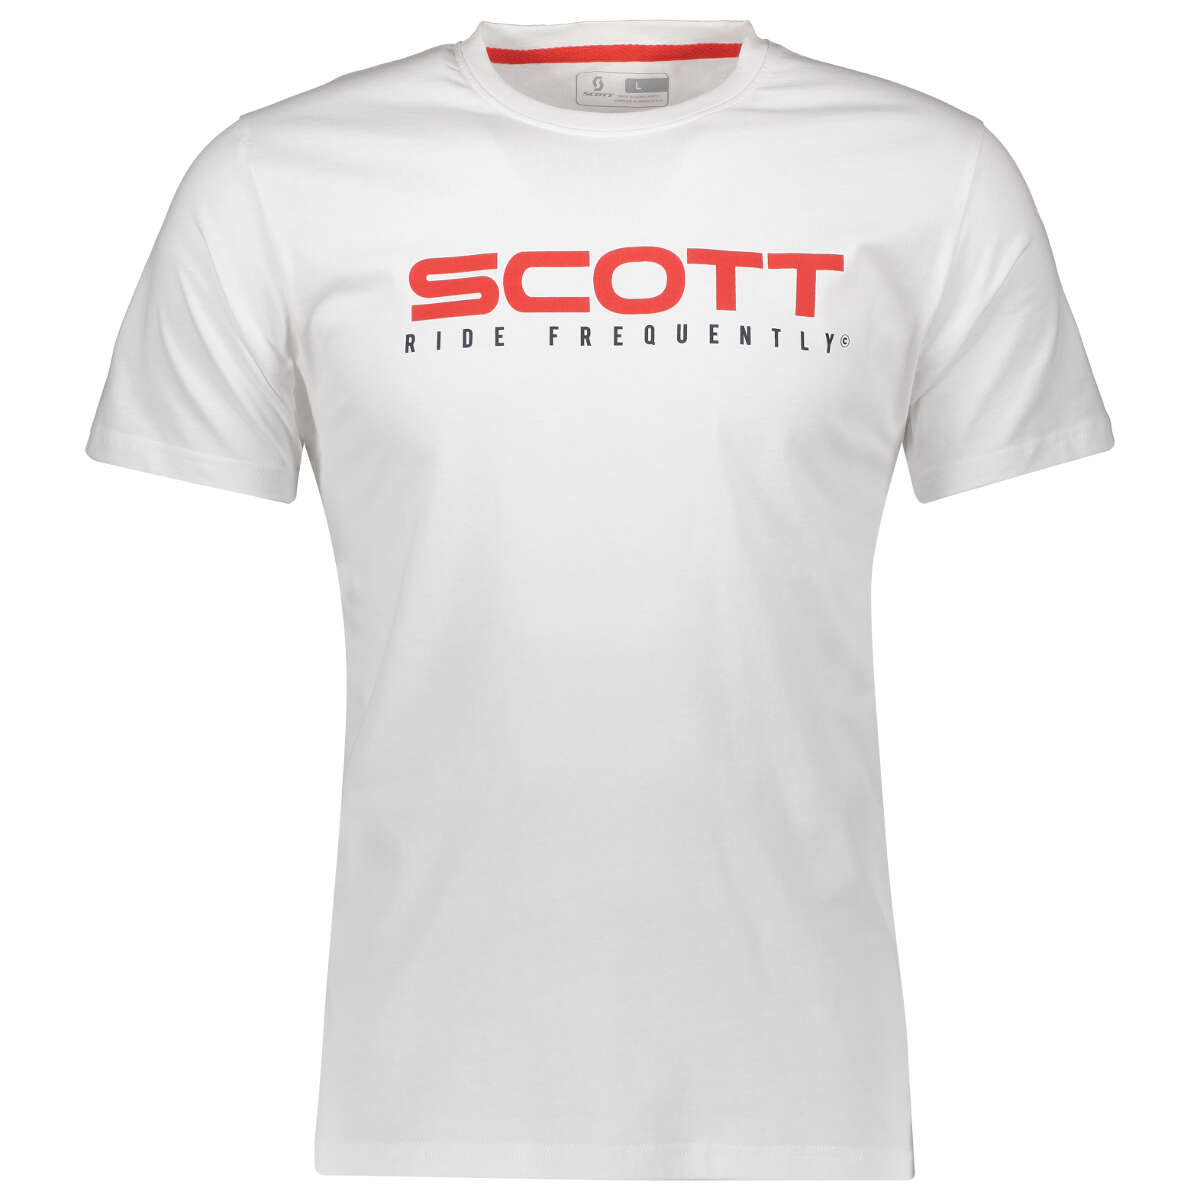 Scott T-Shirt 10 Heritage White